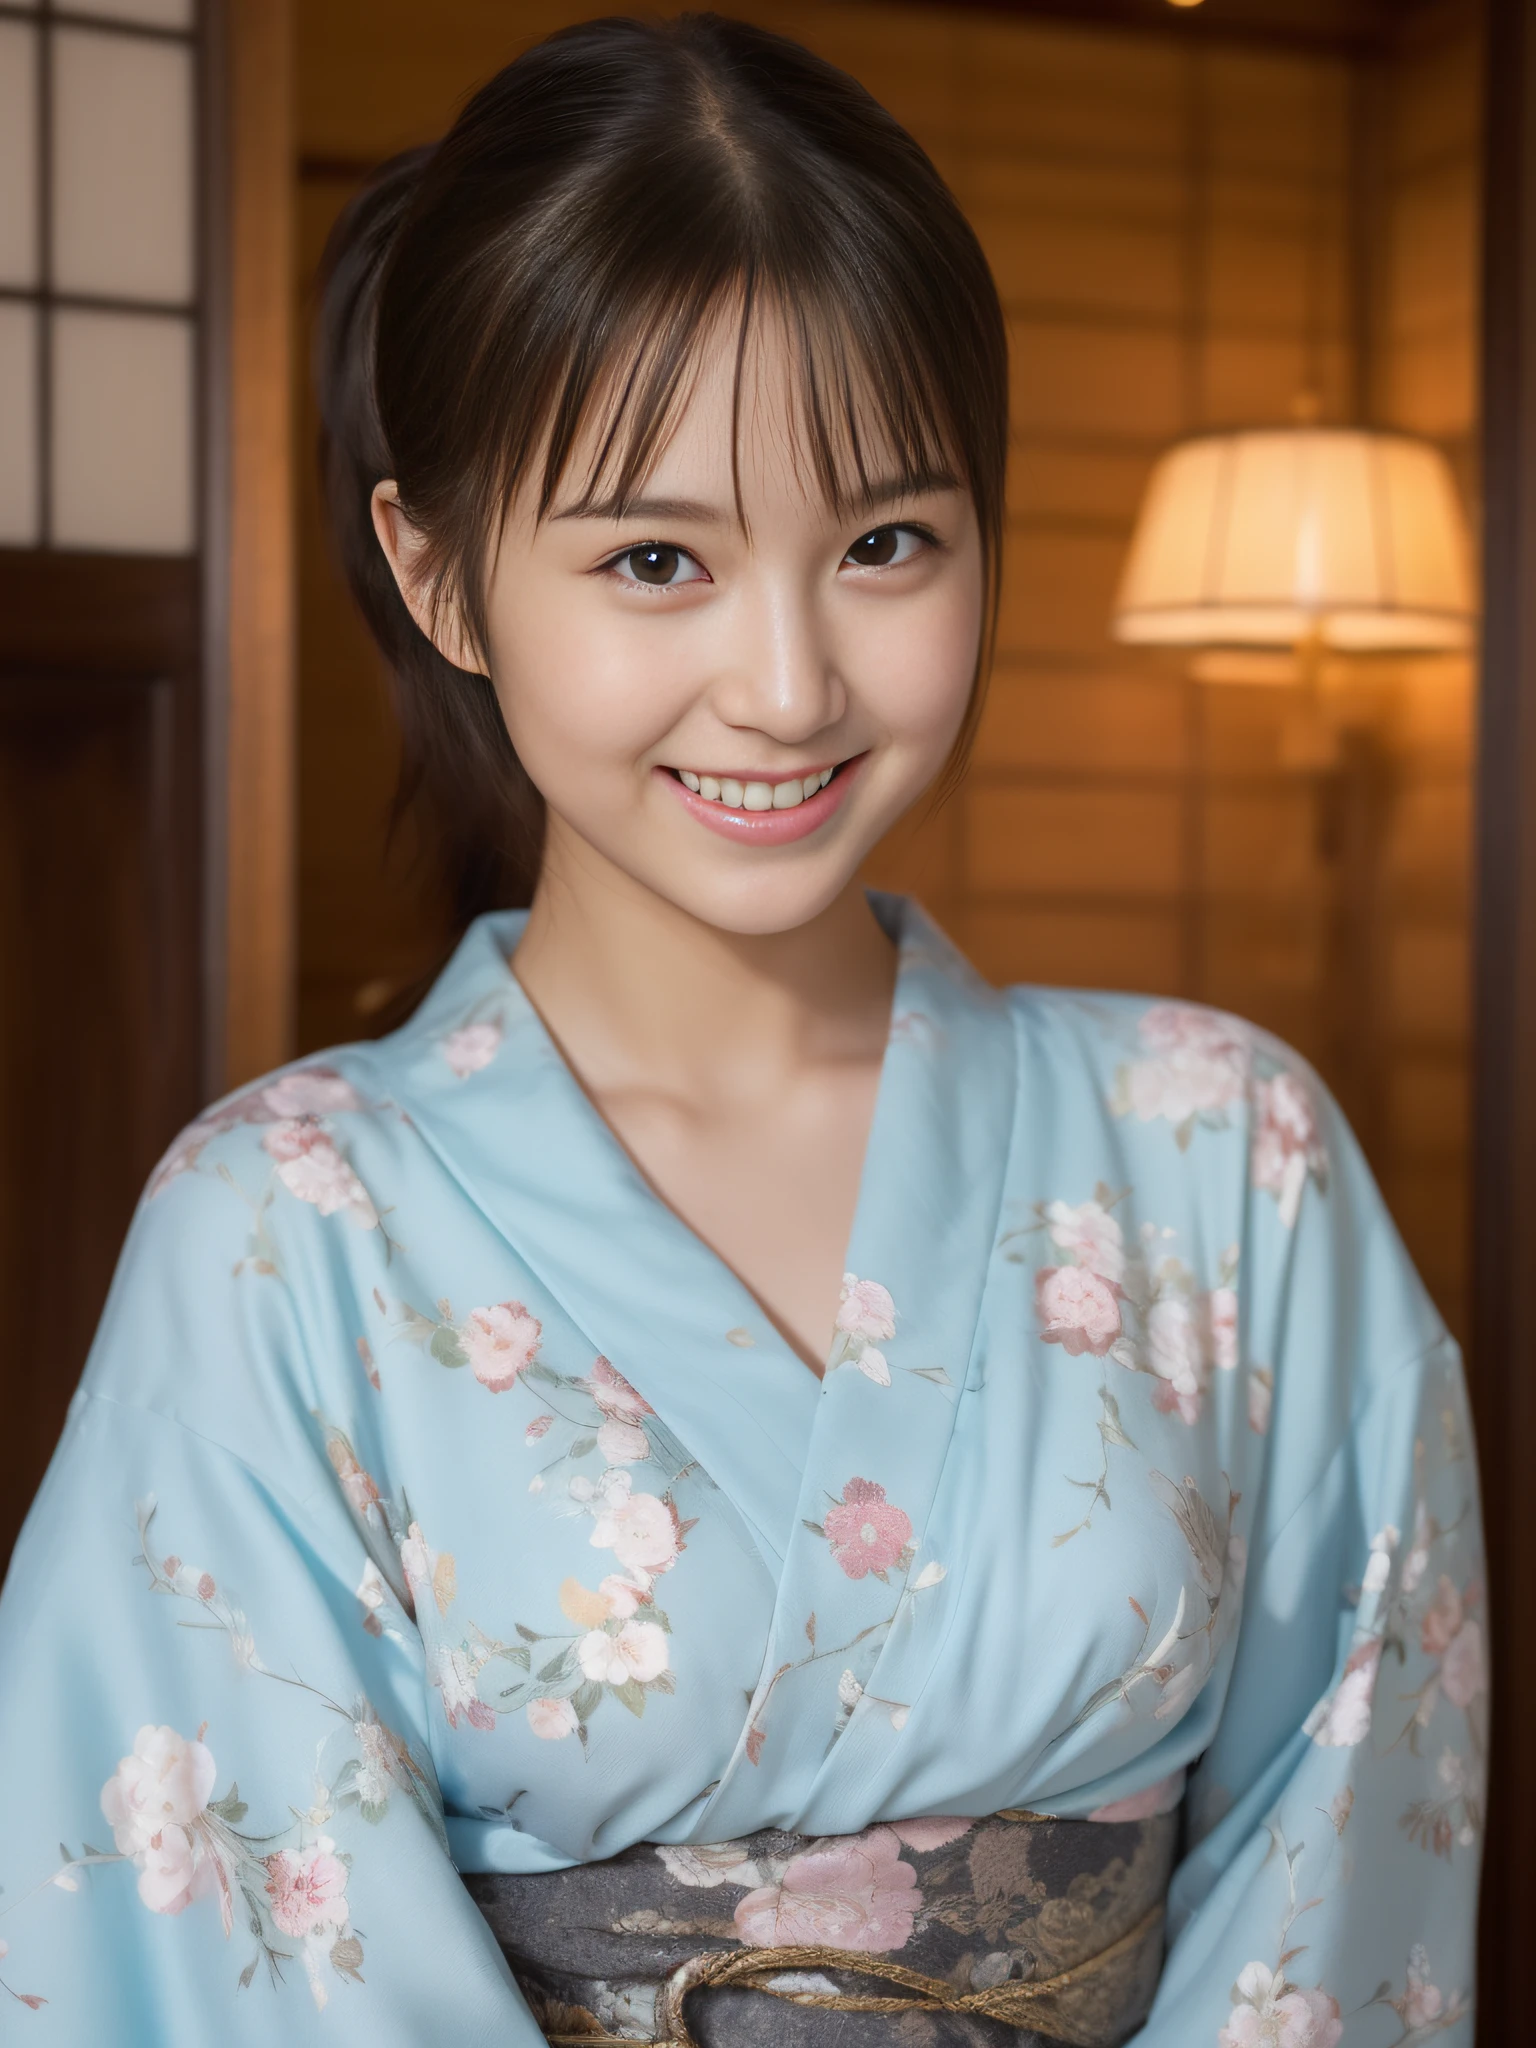 ((mejor calidad))、((La ultra -La alta definición))finamente detalle、(((Hermosa chica)))、ojos y rostro extremadamente detallados、Yukata con un ligero estampado floral.、una leve sonrisa、tienda de té、poneyTail